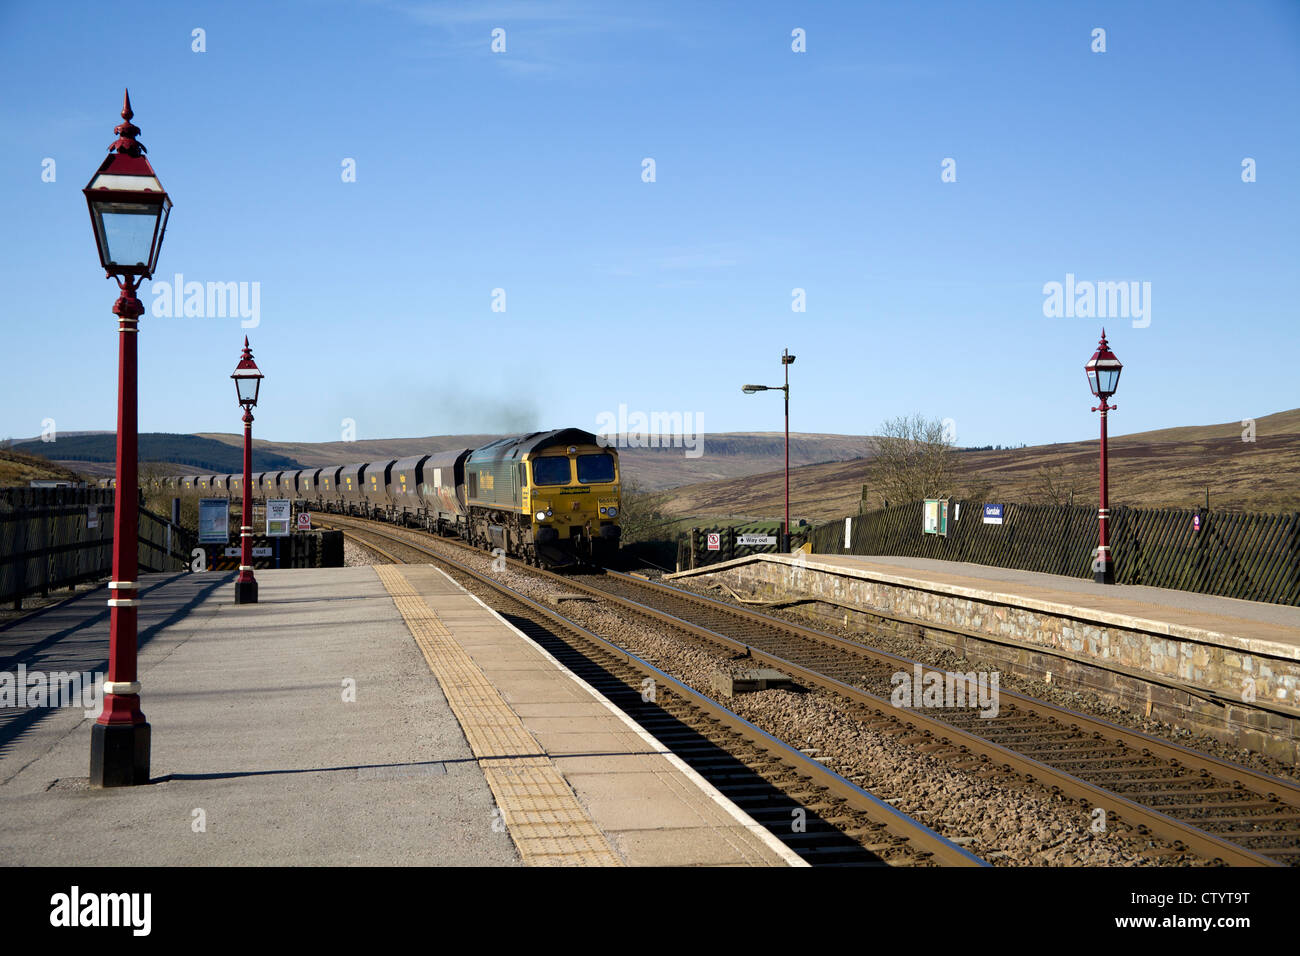 Train de charbon Freightliner passant Garsdale gare sur la célèbre s'installer à Carlisle railway, Garsdale, Cumbria, Angleterre Banque D'Images